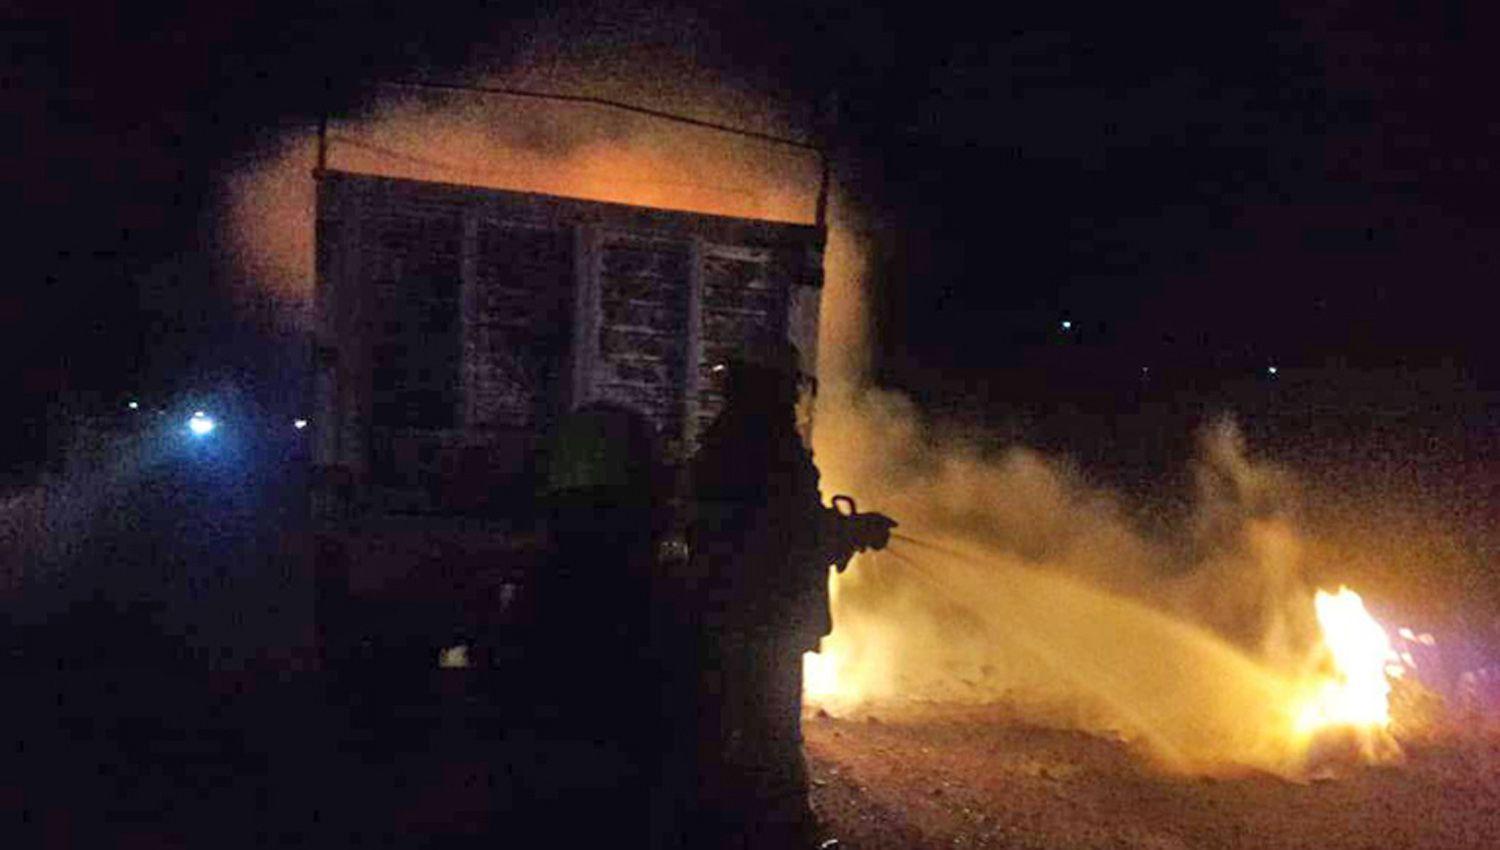 Voraz incendio de un camioacuten con productos quiacutemicos en la ruta 34